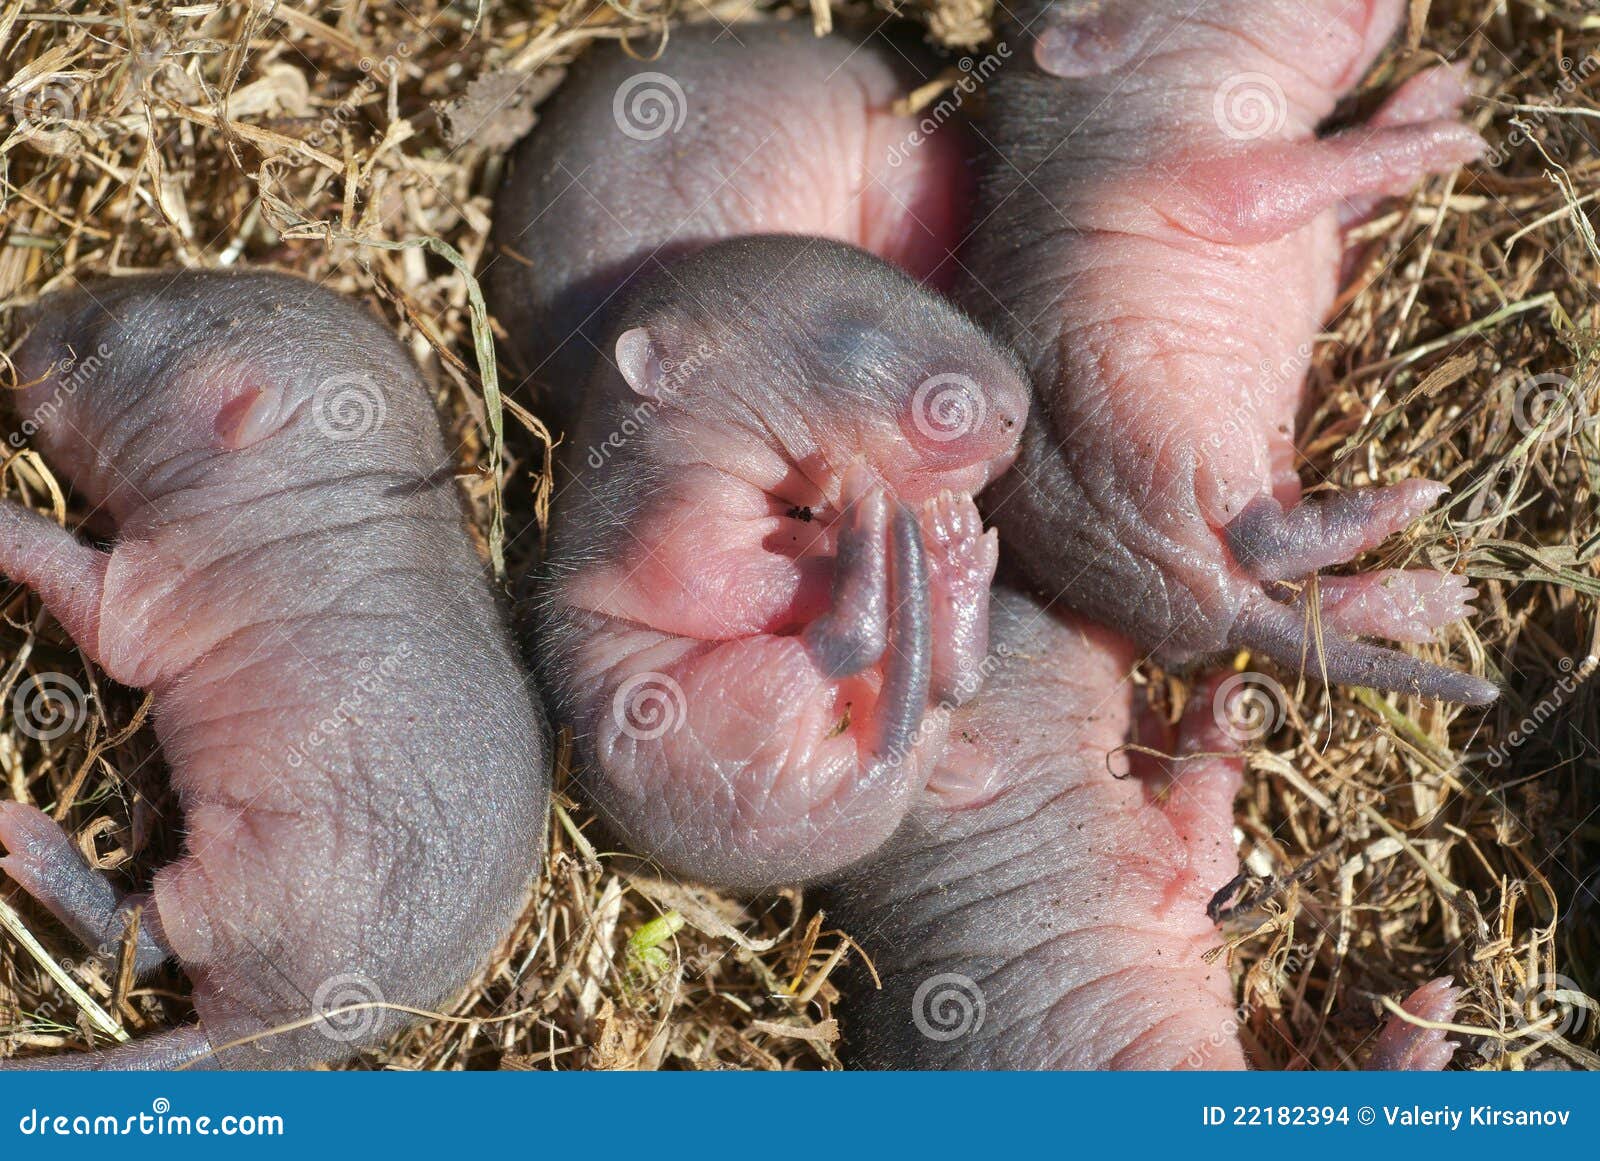 Новорожденные детеныши мыши. Детеныш полевой мыши. Полевая мышь новорожденная. Детеныши грызунов.